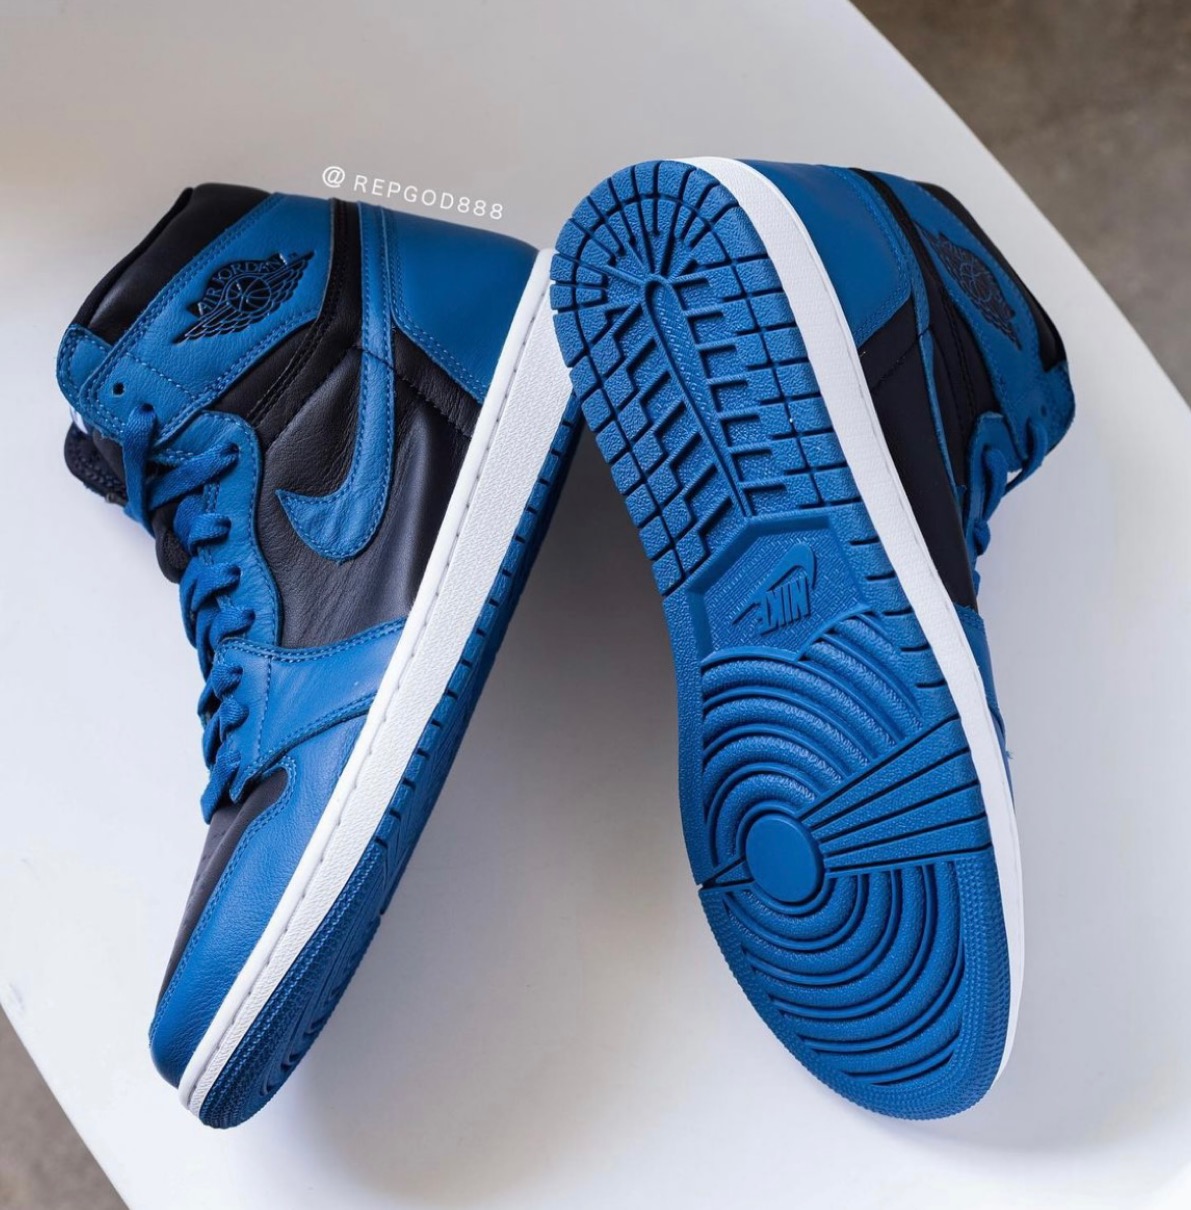 【Nike】Air Jordan 1 Retro High OG “Dark Marina Blue”が2022年1月15日に発売予定